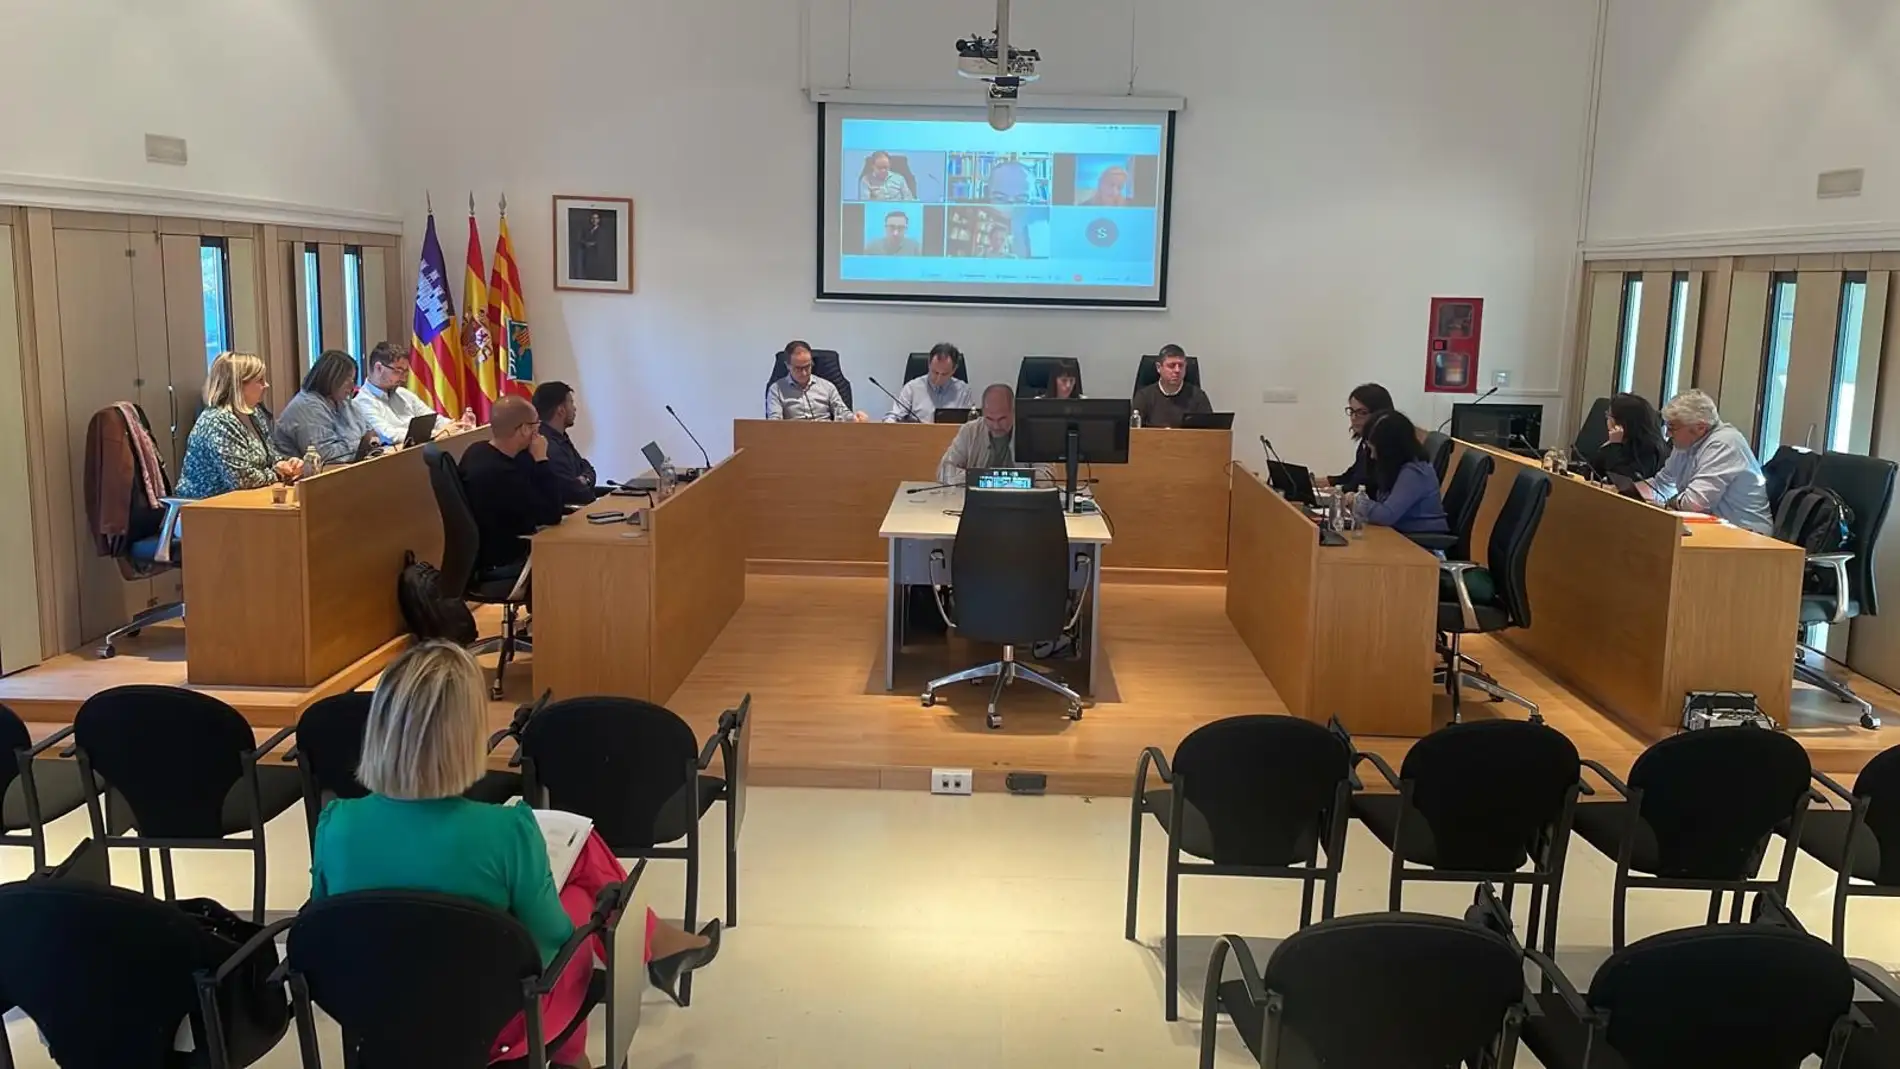 El Consell de Formentera aprueba una subida del 30% en las tasas de recogida de basura 